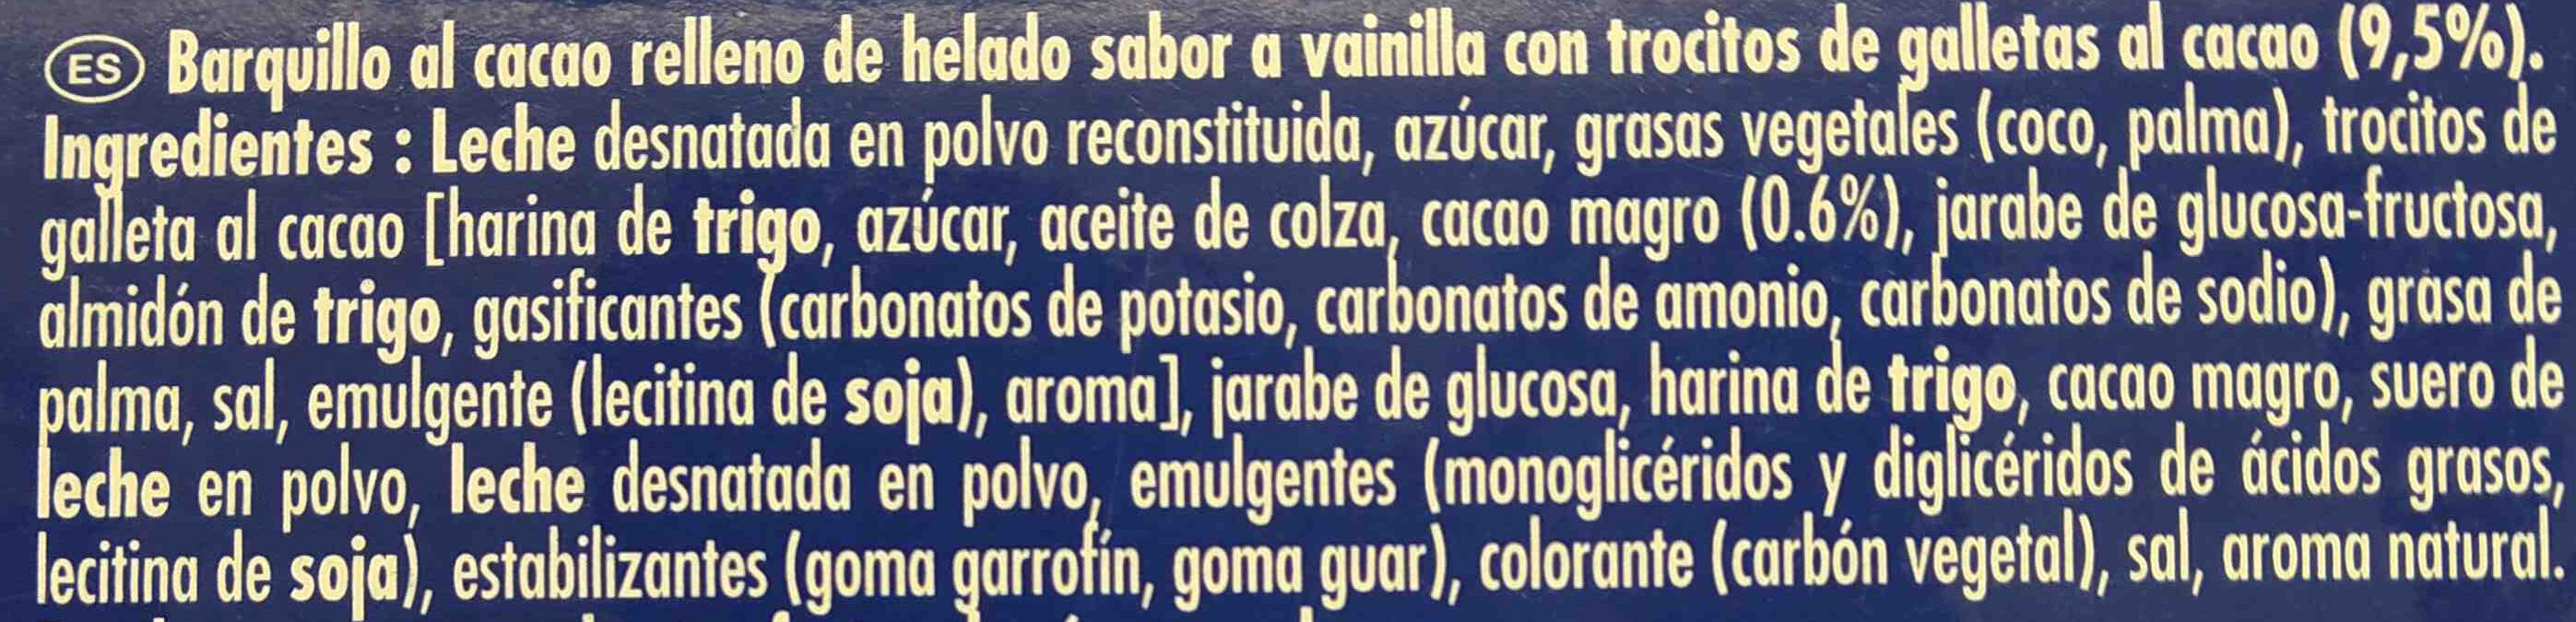 Cono helado - Ingredients - es